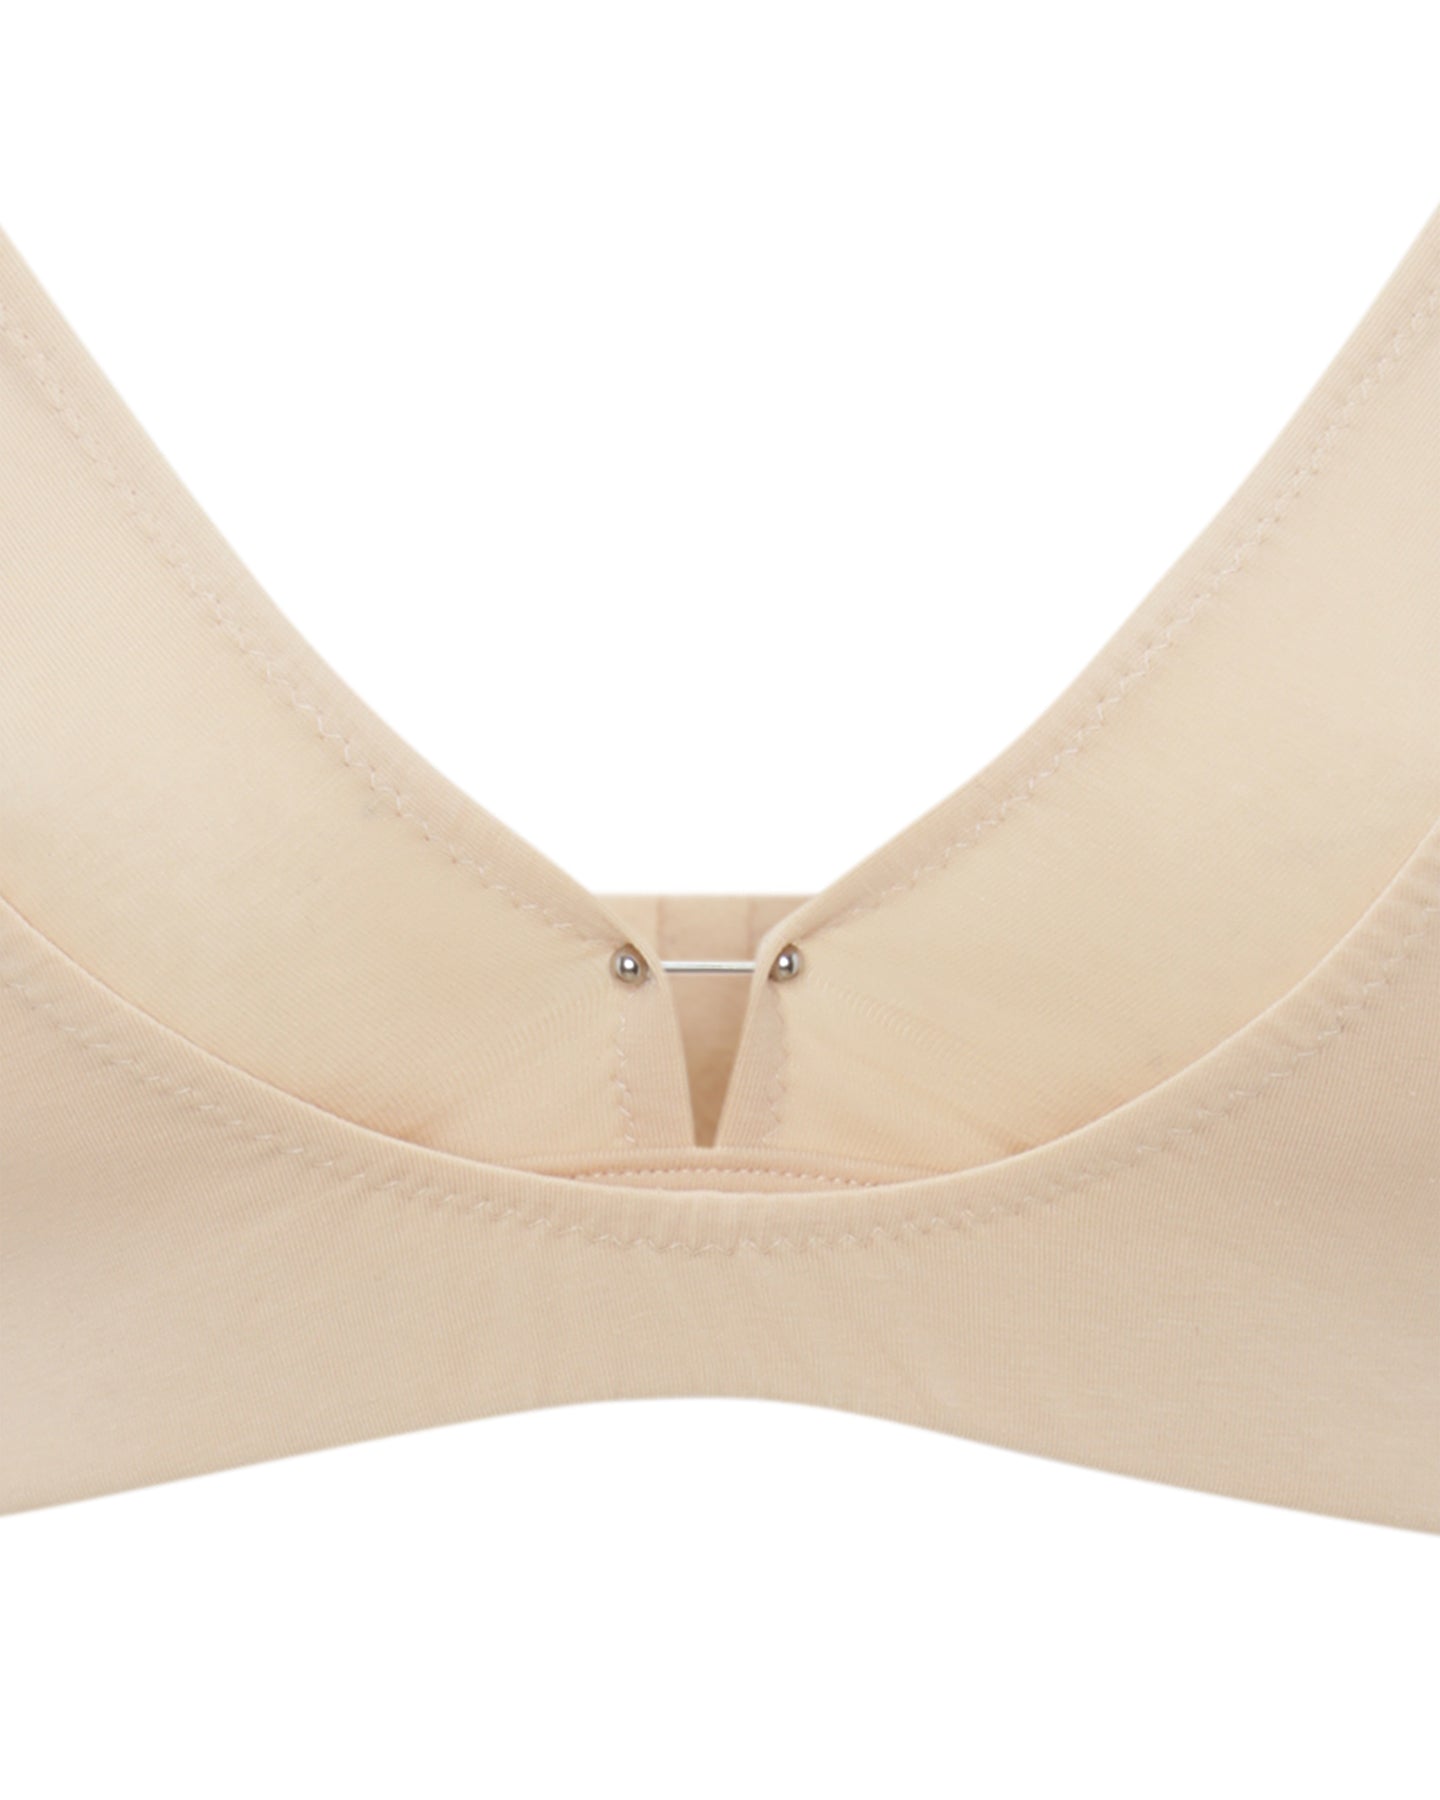 Cajsa Nude Beige Organic Cotton Wireless Bra for Women, Double Triangle  Bralette Top, Bras